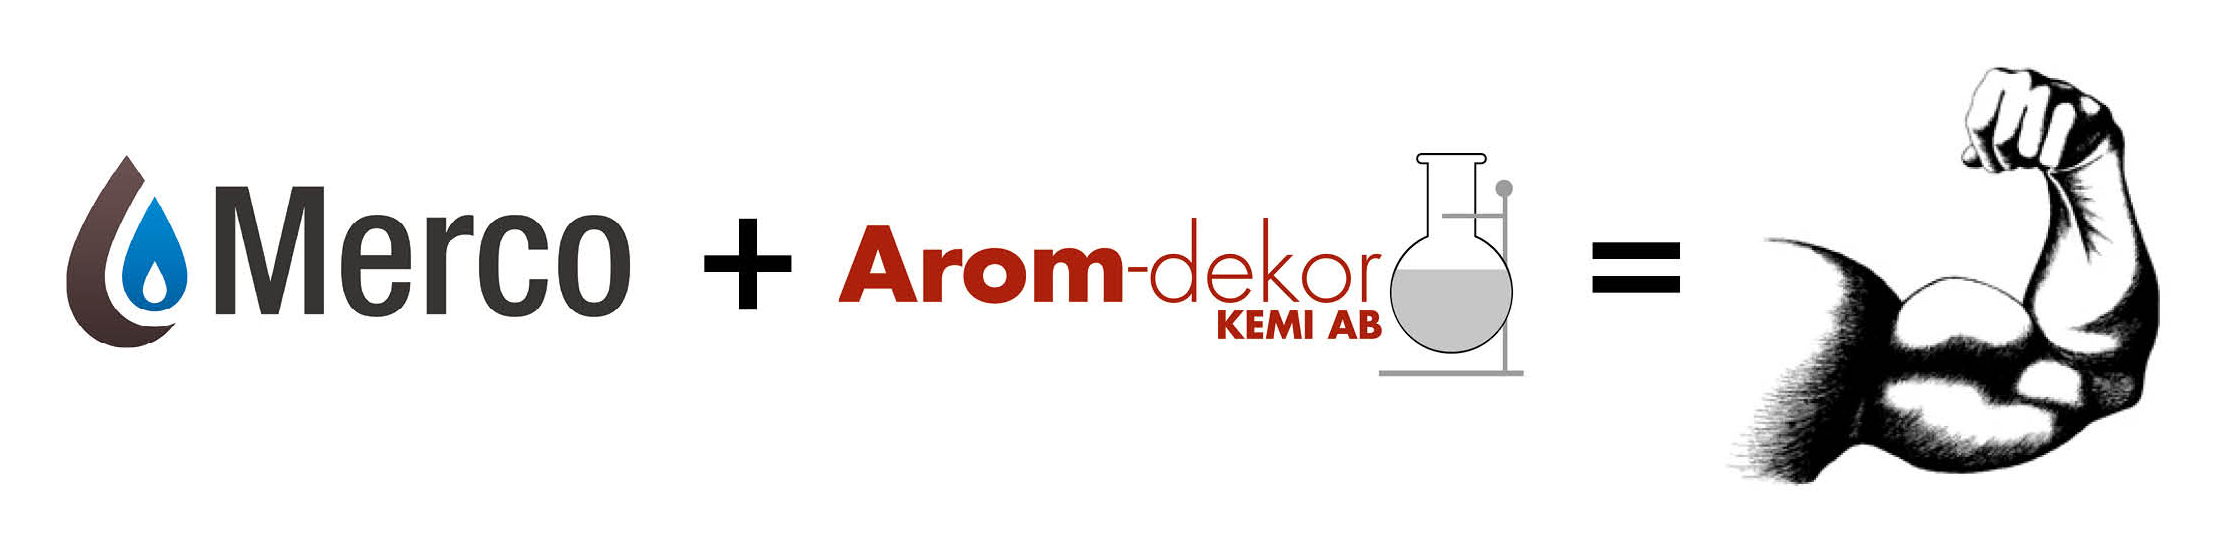 Arom-dekor Kemi AB erwirbt 80 % der Anteile am norwegischen Unternehmen Merco AS